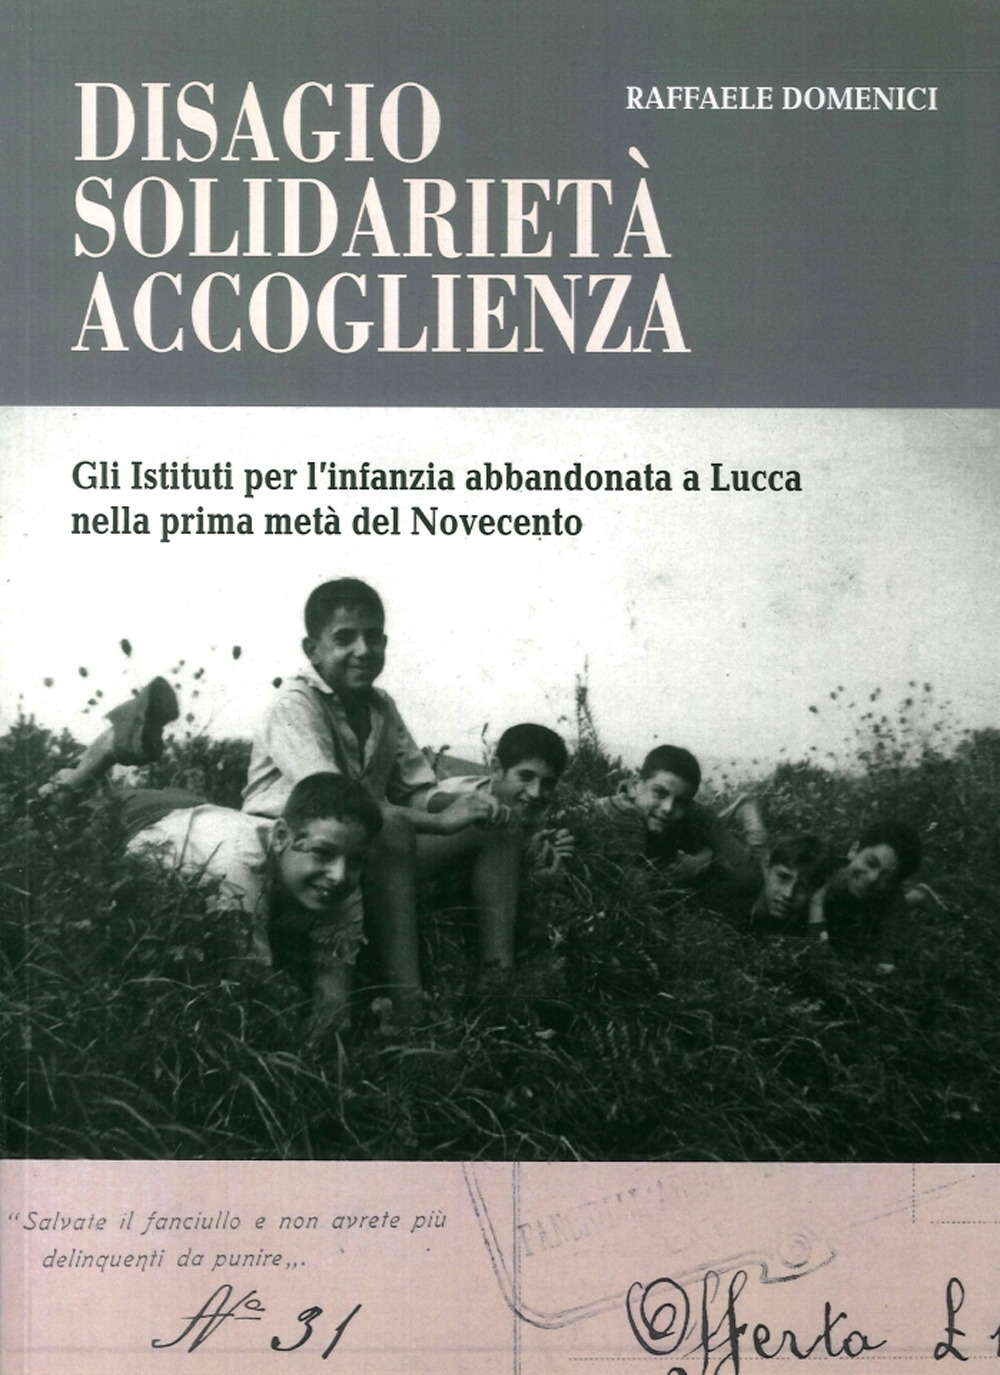 Disagio, solidarietà, accoglienza. Gli istituti per l'infanzia abbandonata a Lucca nella prima metà del Novecento